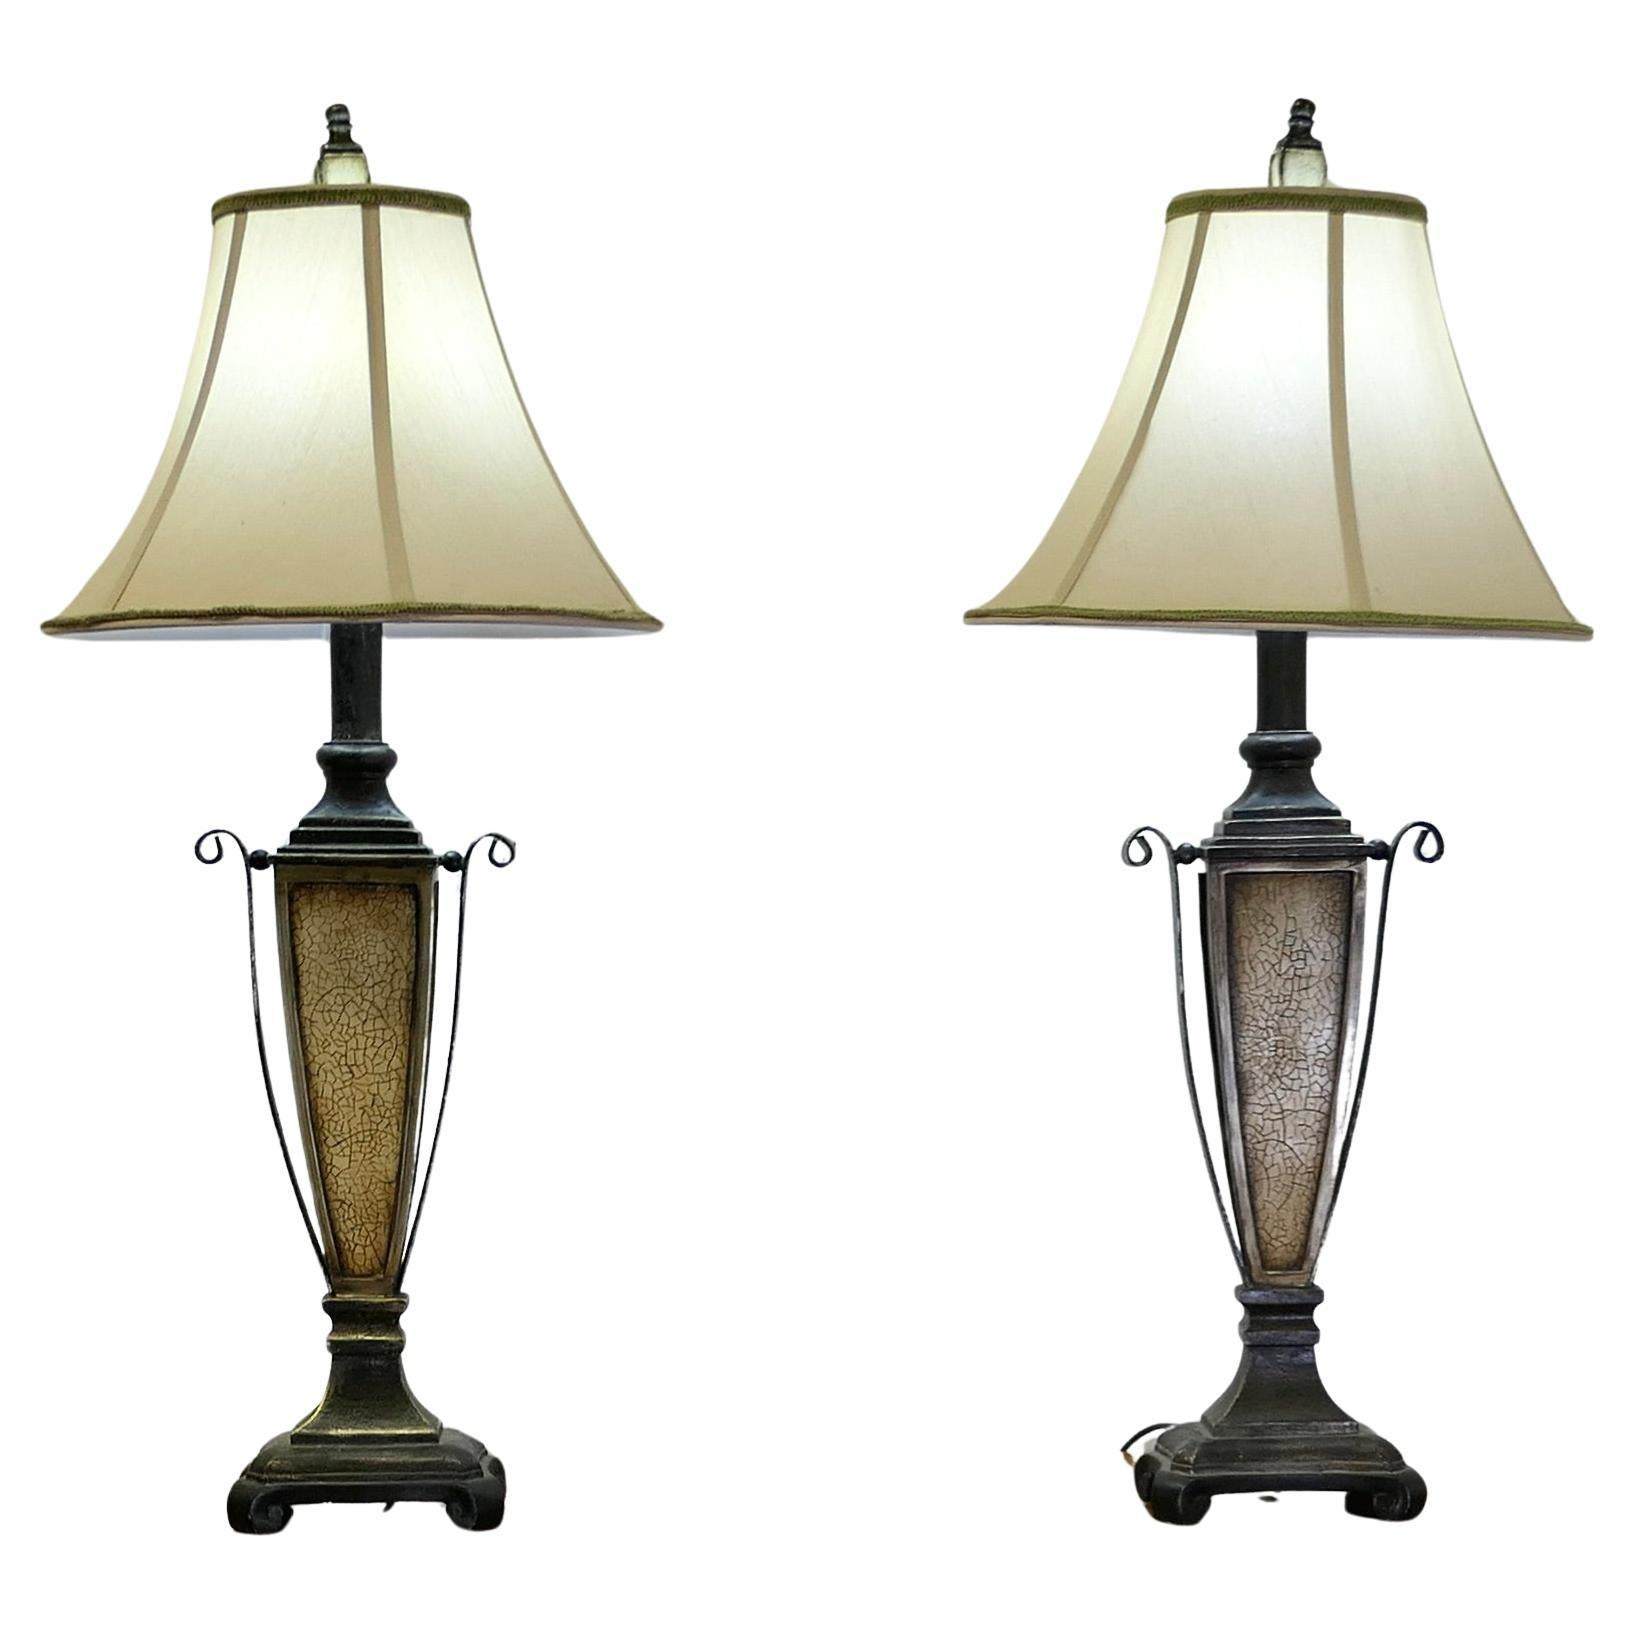 Coppia di lampade da tavolo in stile Art Decor   Un'emozionante coppia di lampade in vendita